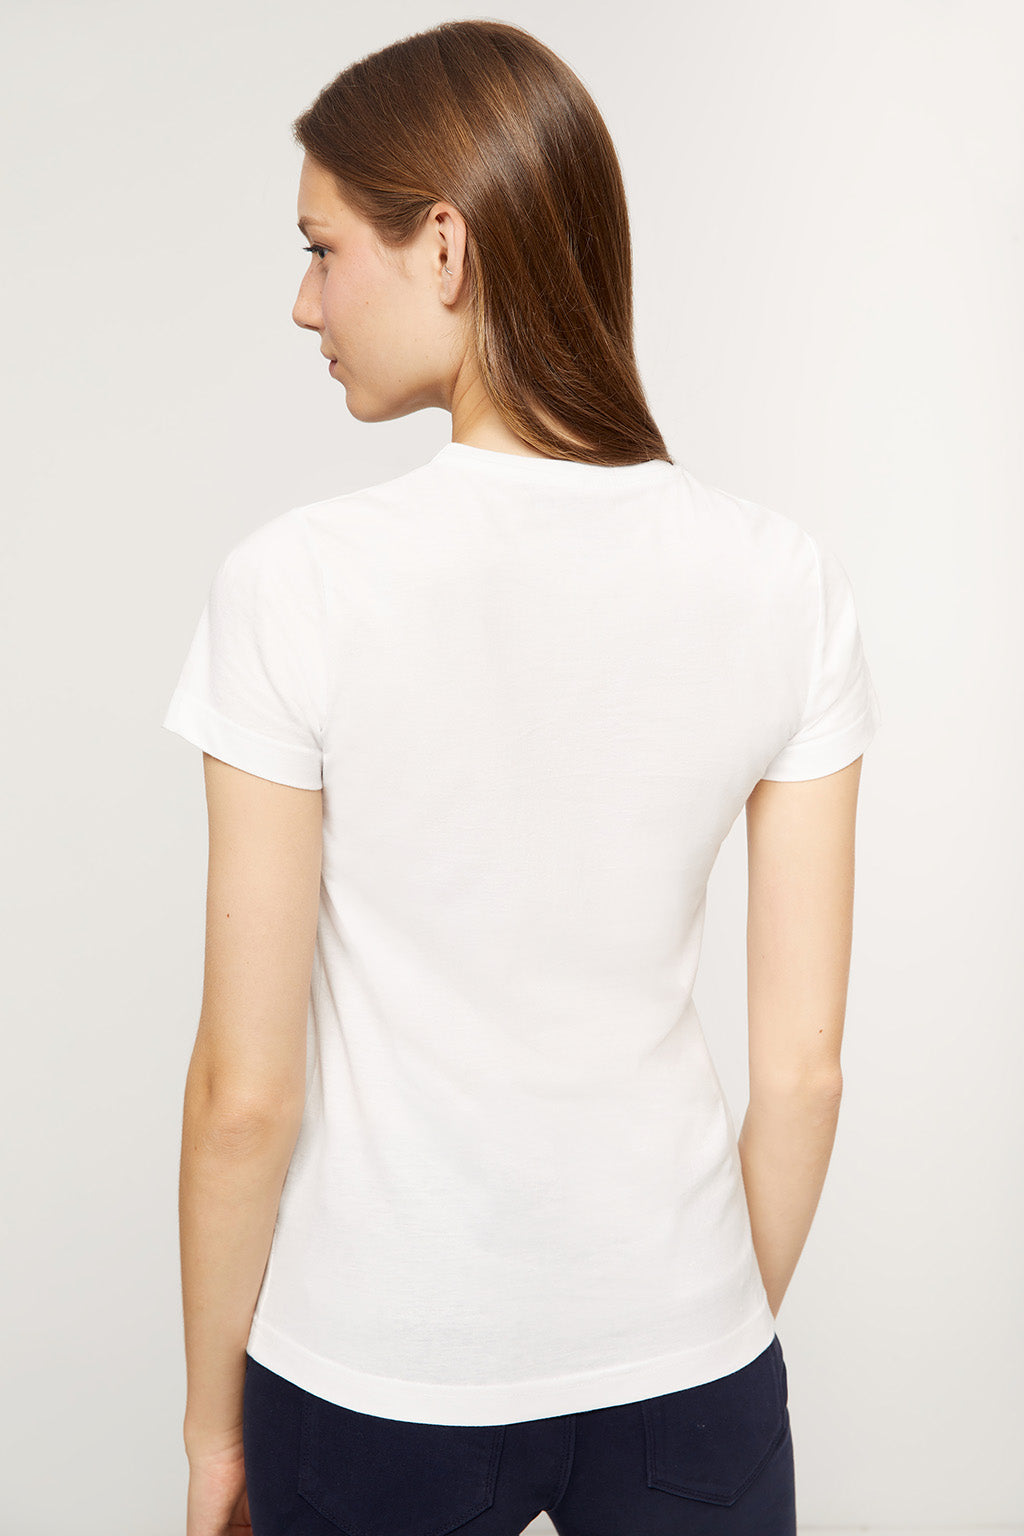 Camiseta blanca con estampación – Polo Club